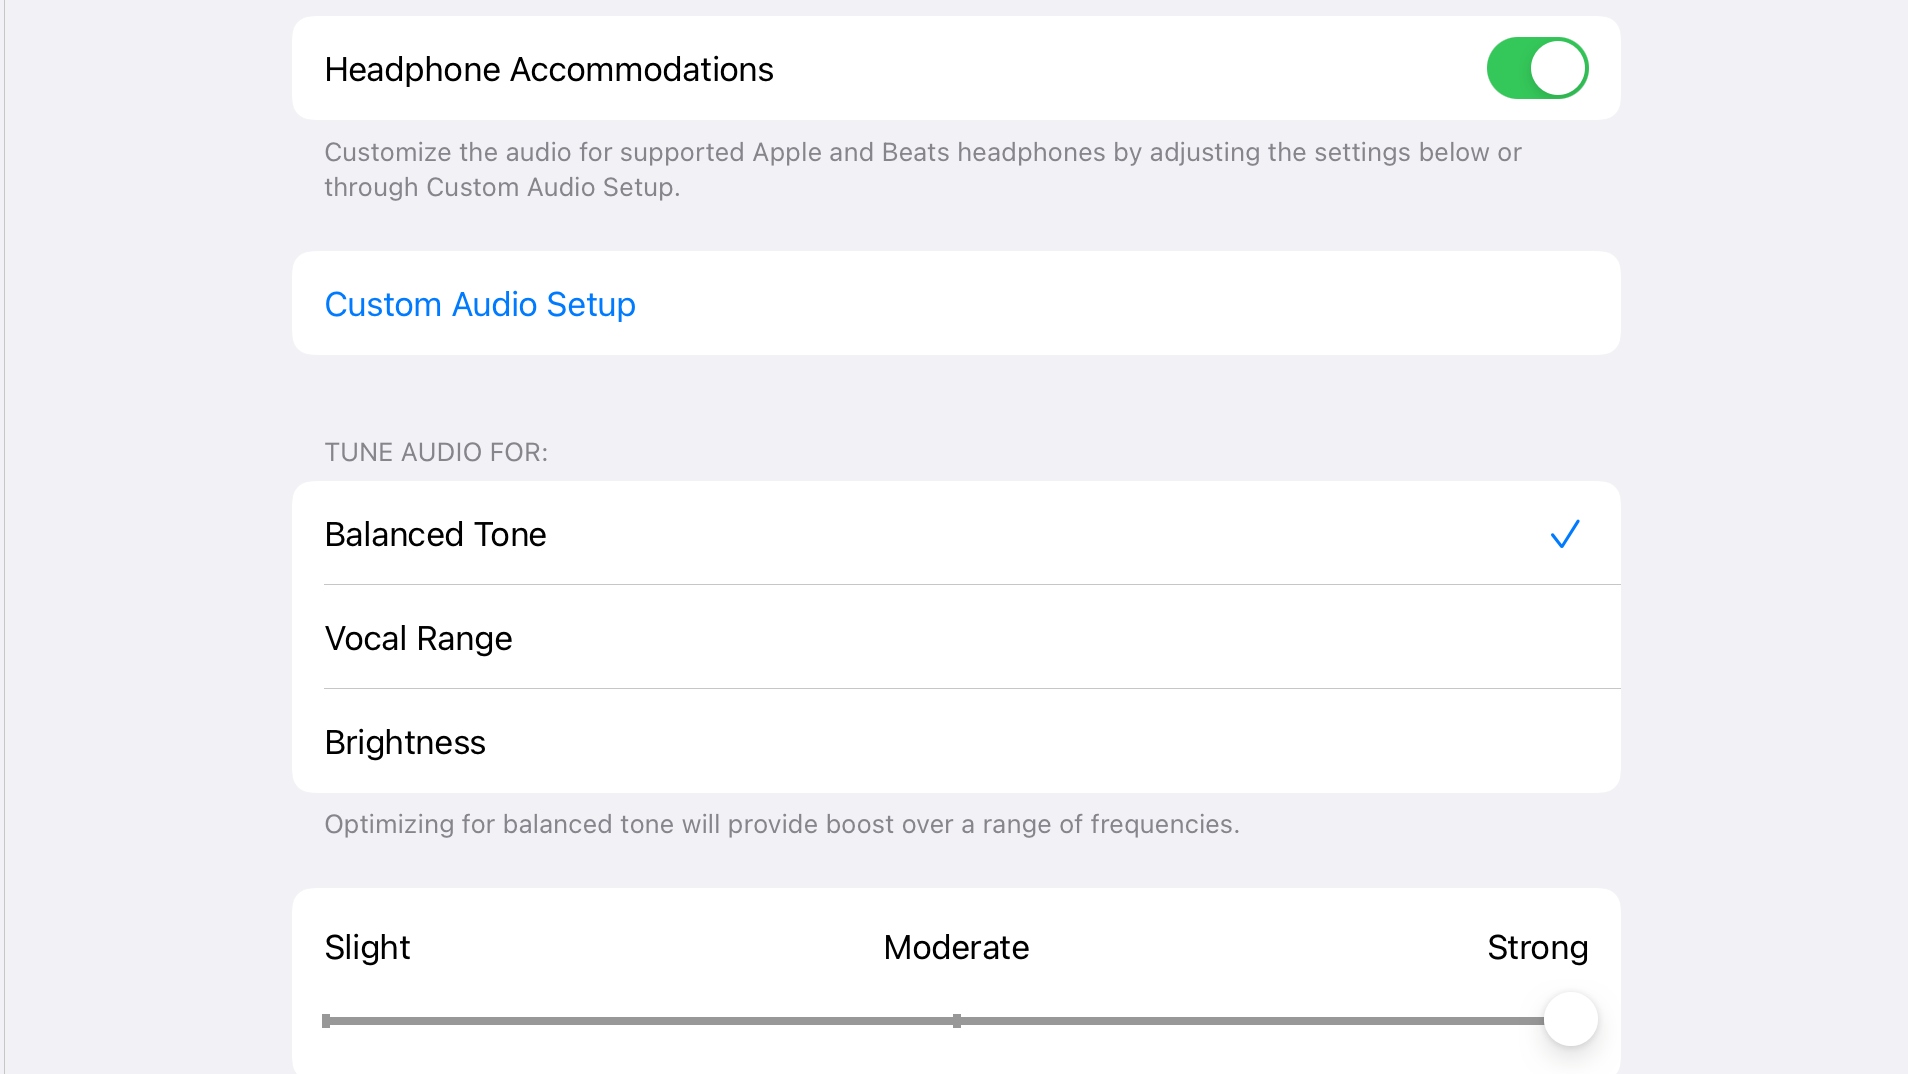 Hướng dẫn nâng cao chất lượng âm thanh cho AirPods, Beats với Headphone Accommodations trên iOS